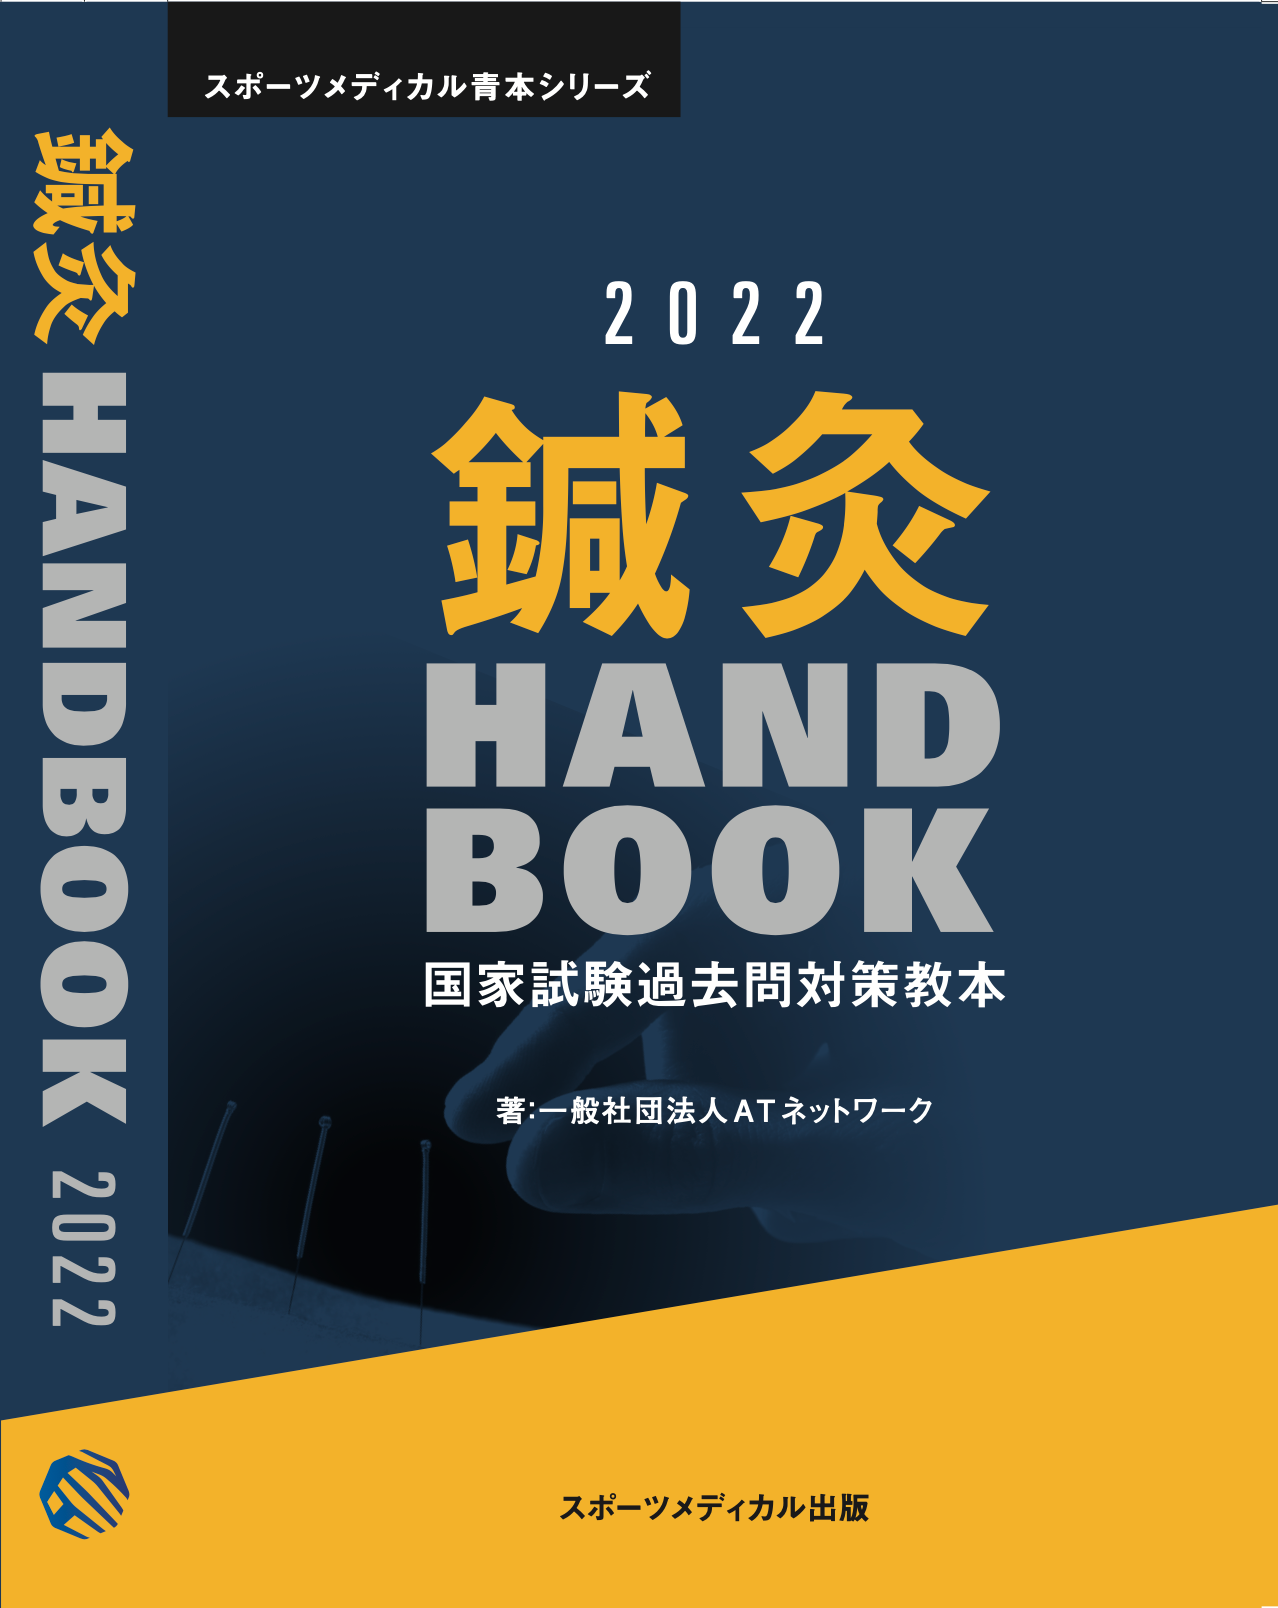 鍼灸 Handbook 2022 – スポーツメディカル出版 オンラインショップ